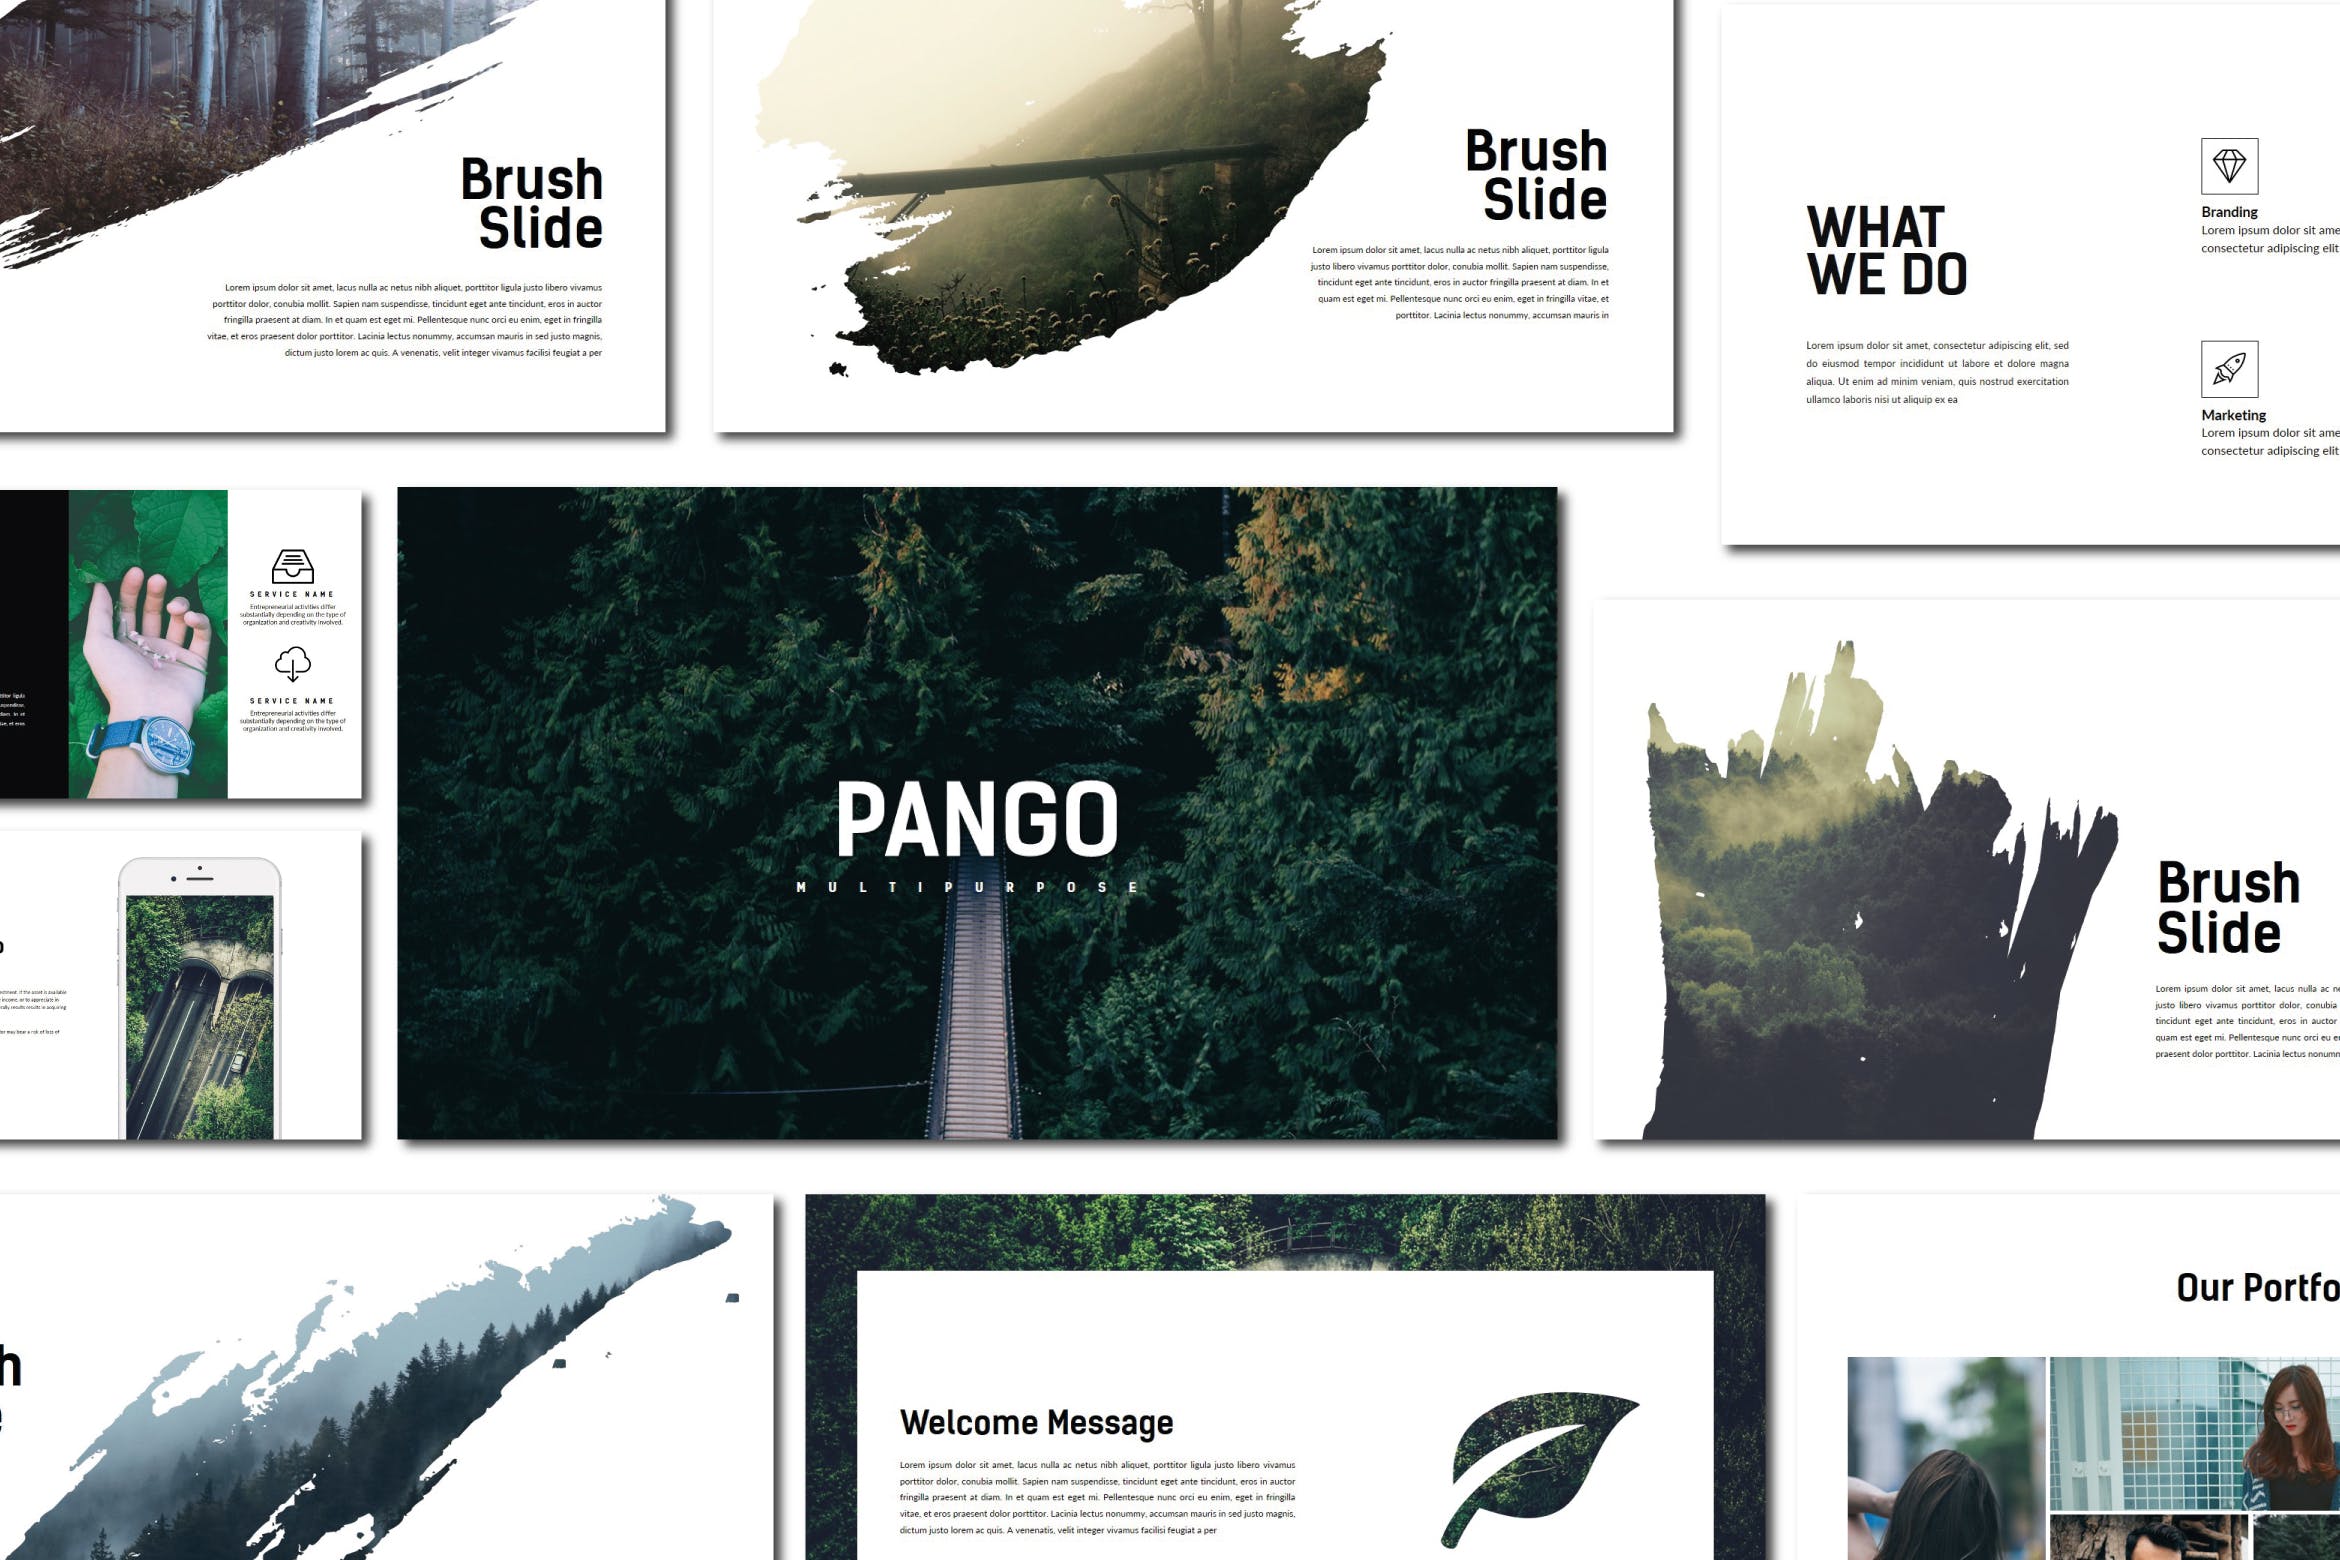 创意摄影/设计/策划工作室16图库精选PPT模板 Pango | Powerpoint Template插图